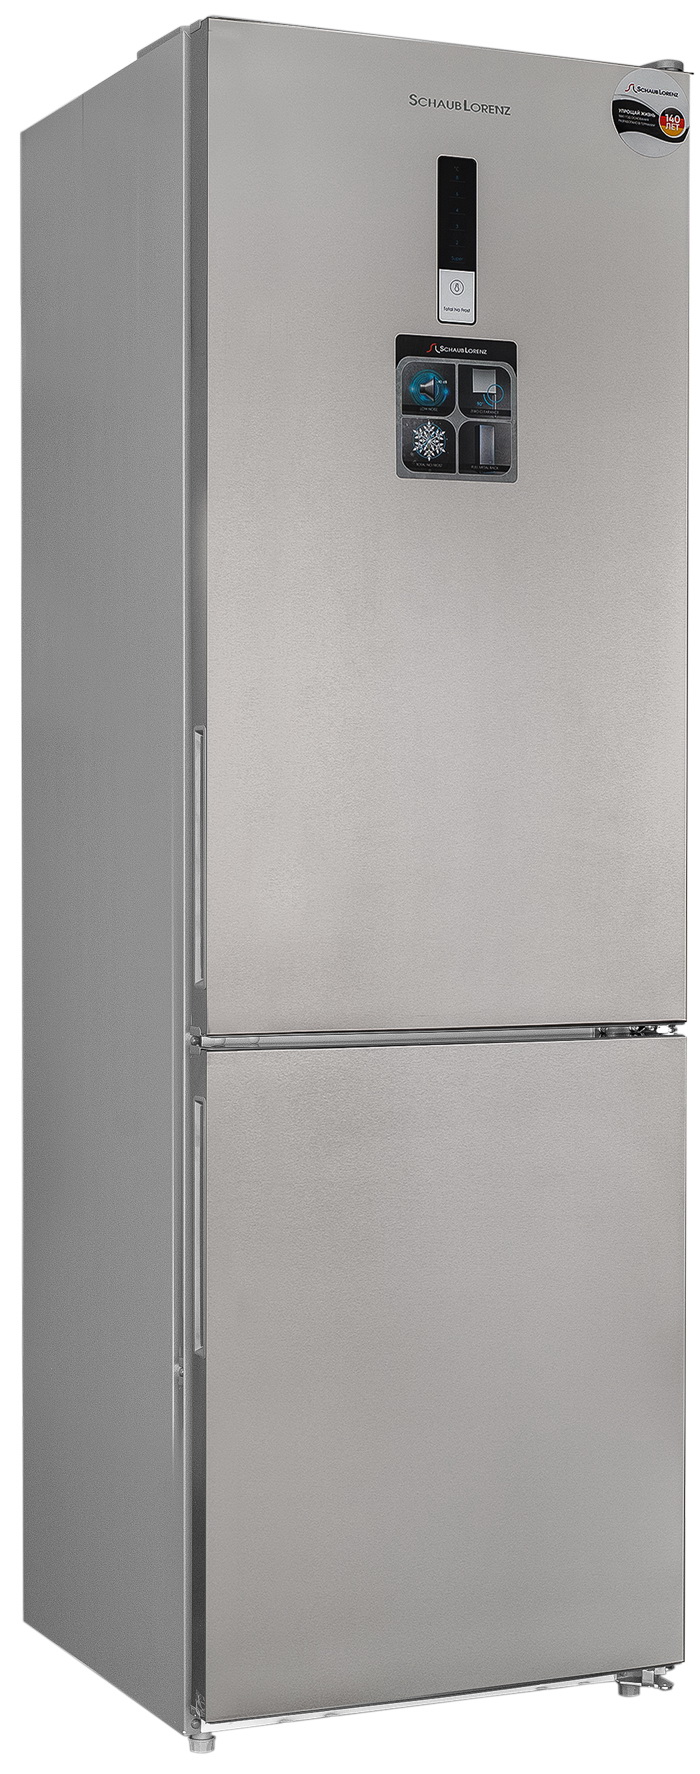 Холодильник Schaub Lorenz SLU C188D0 G серебристый двухкамерный холодильник schaub lorenz slu c188d0 g